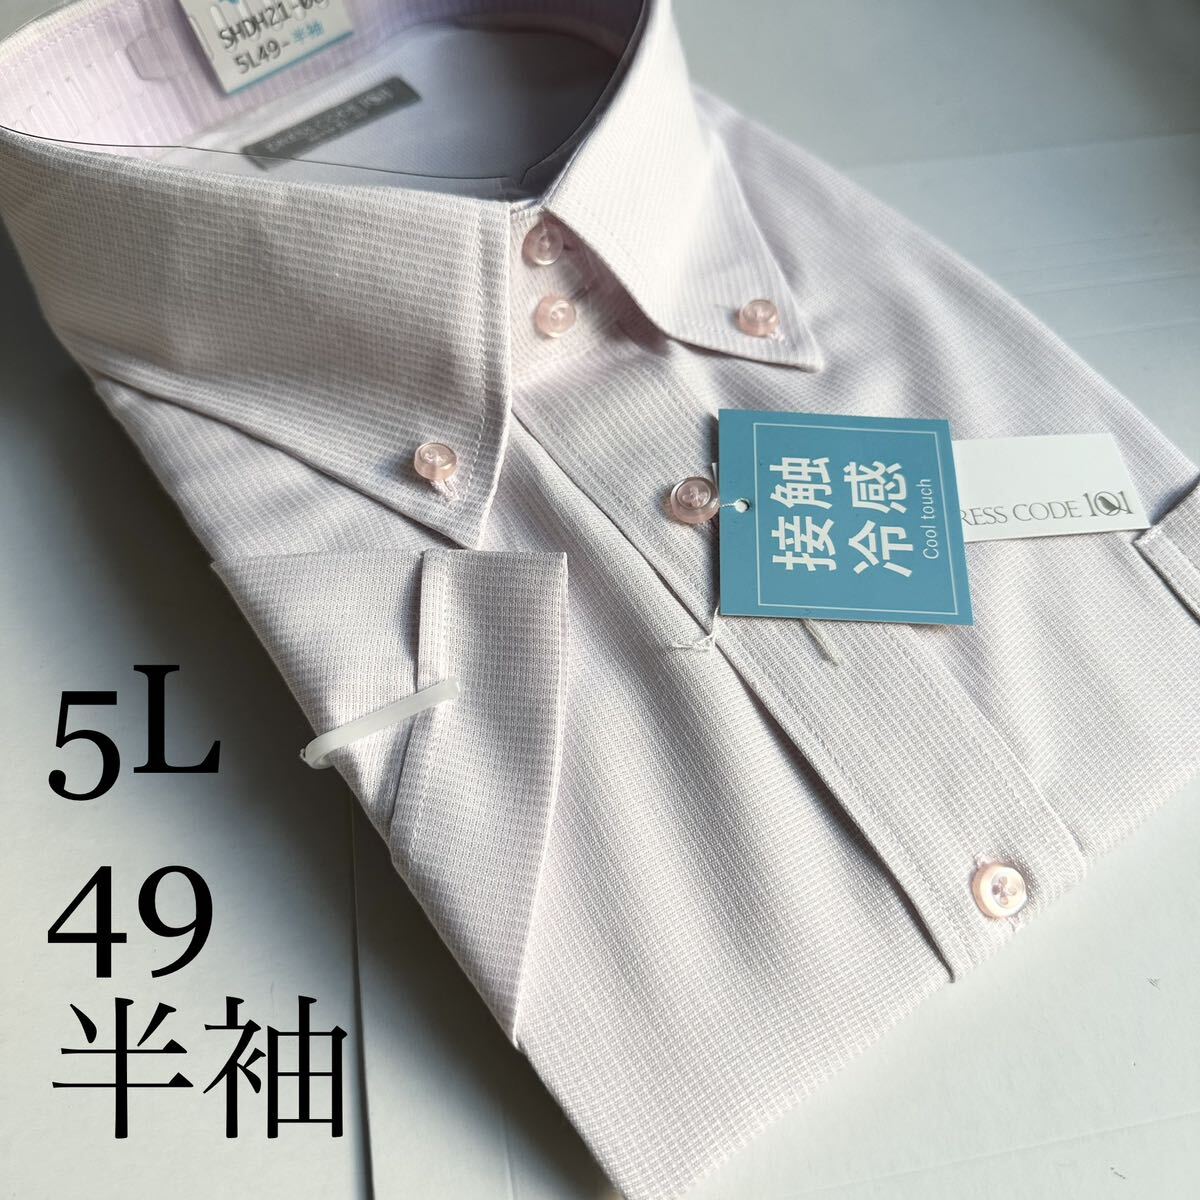 半袖ワイシャツ★5Lサイズ49★形状安定★綿25%ポリエステル75%DRESS CODE 101の画像1